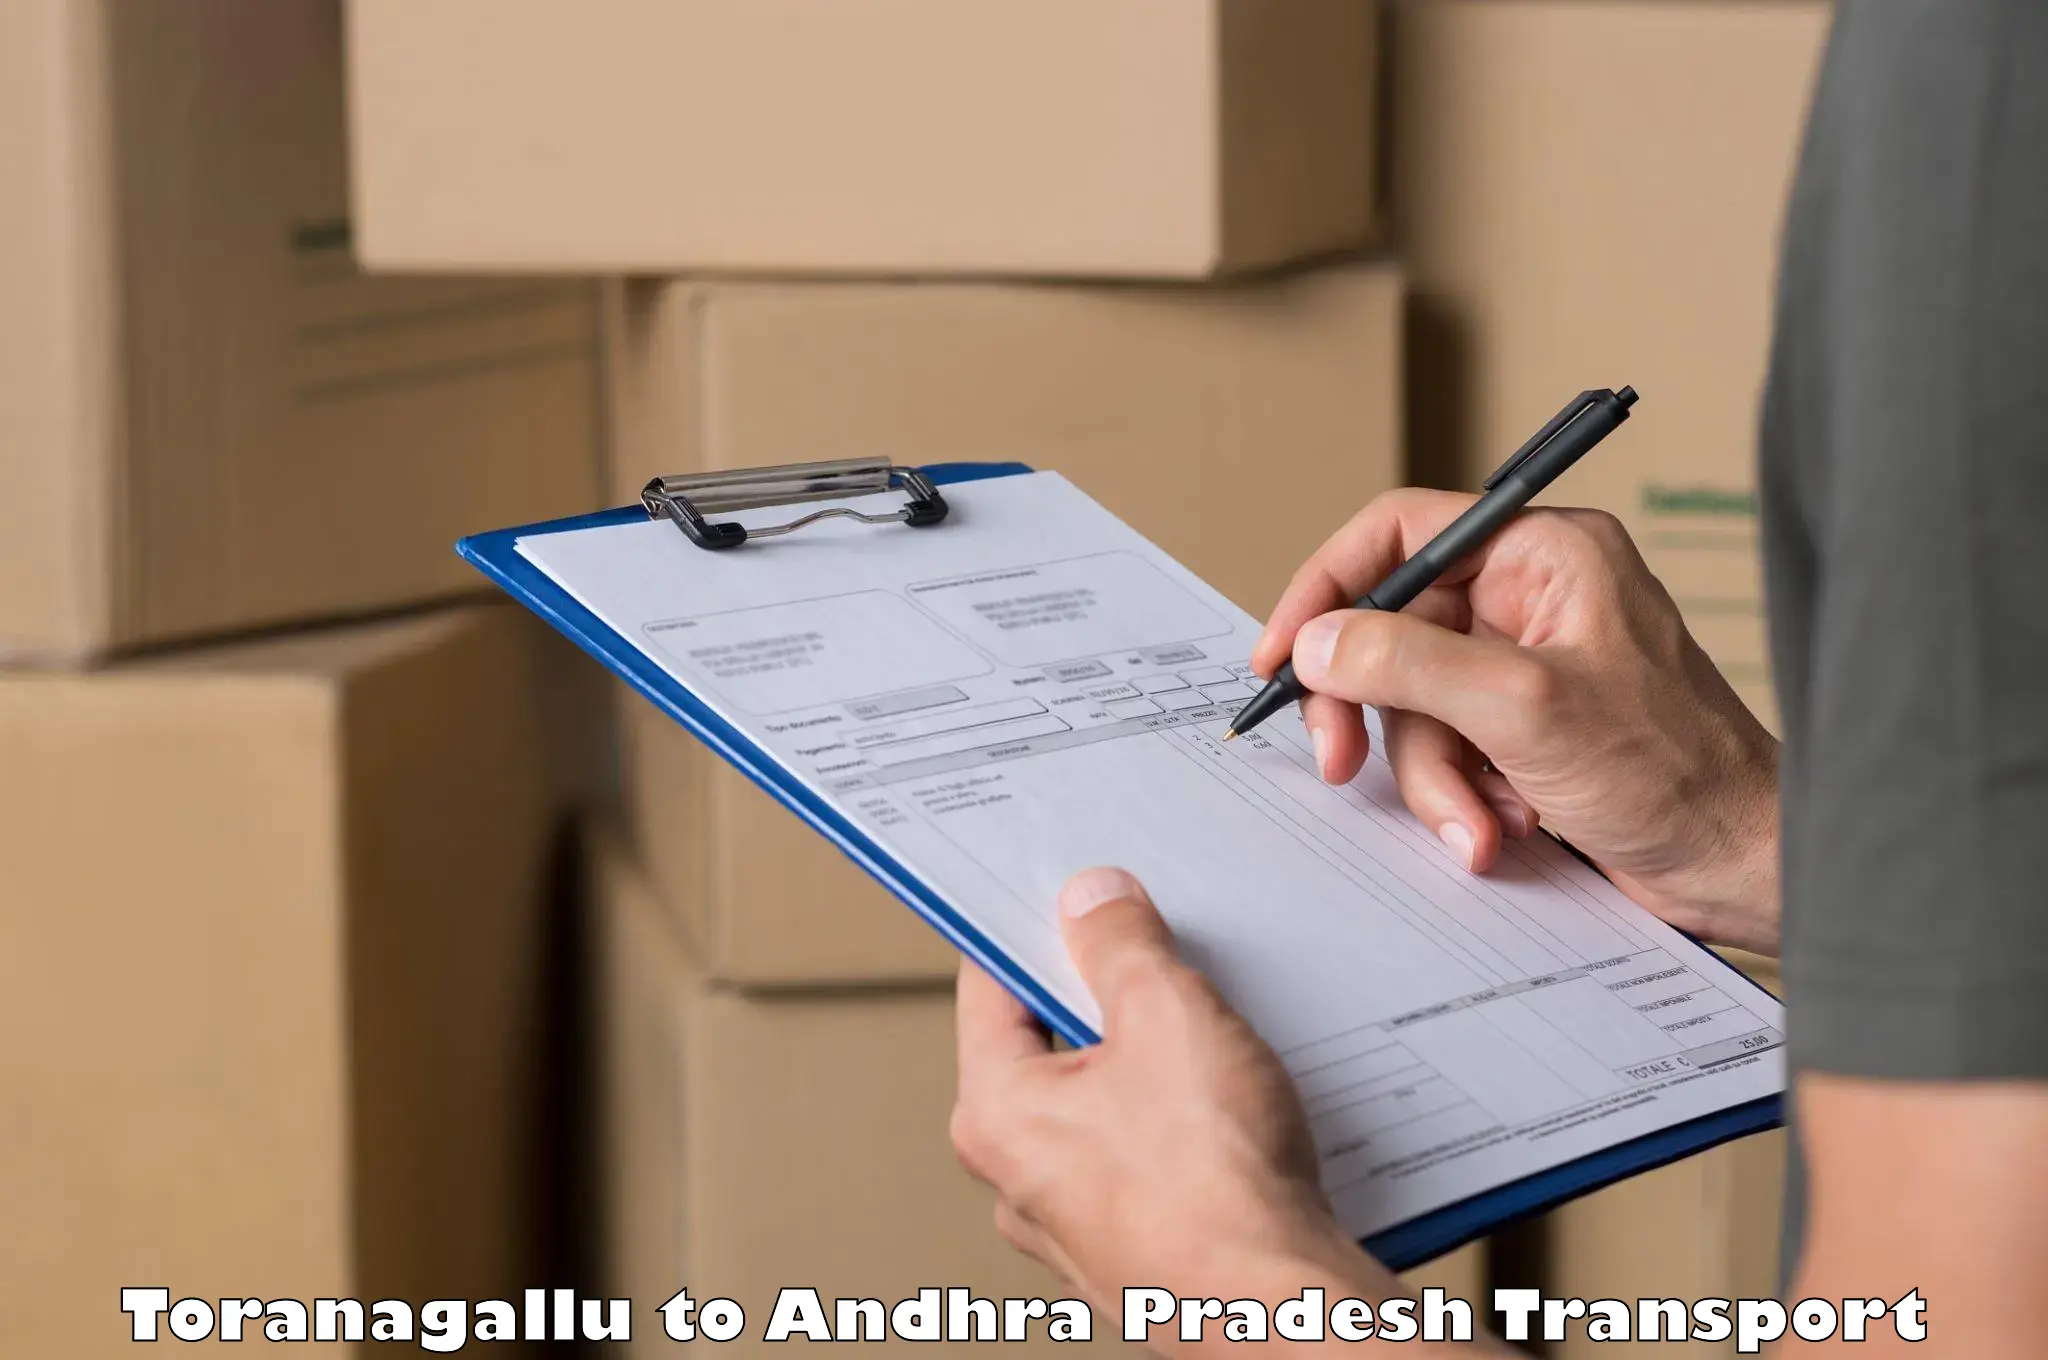 Container transport service Toranagallu to Polavaram